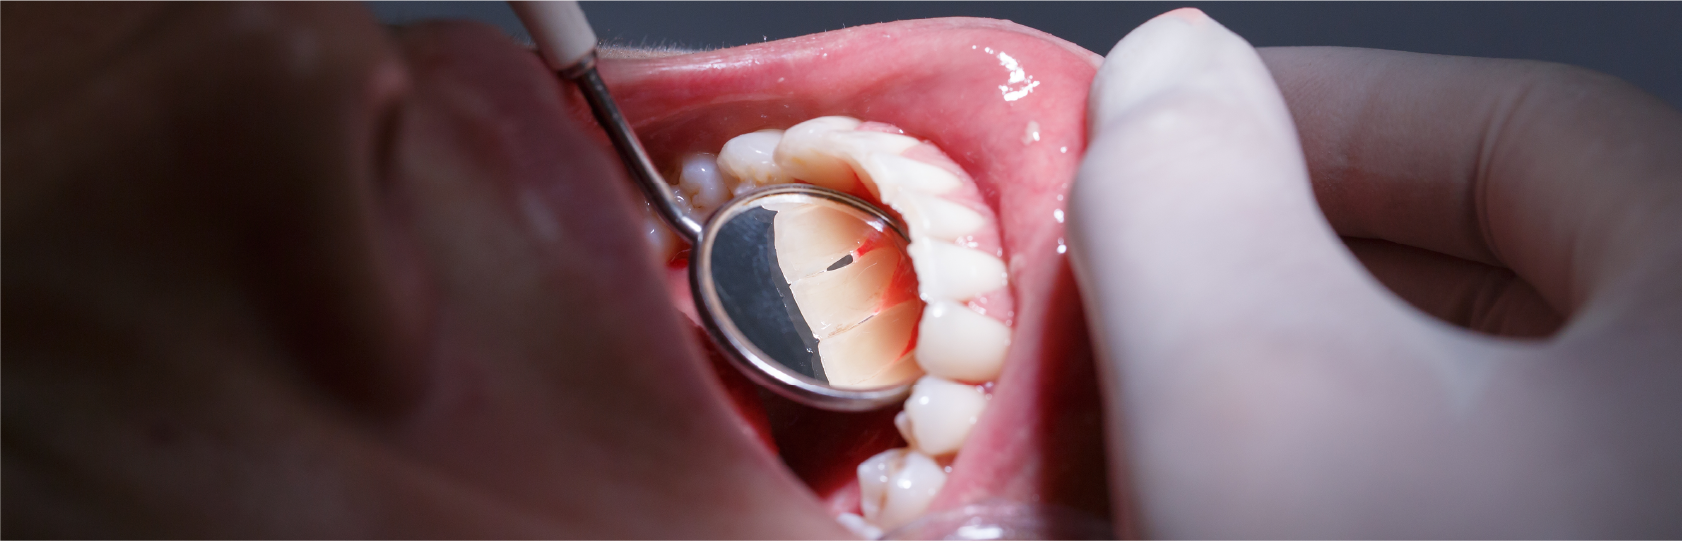 「歯周病」と診断されたらどうするべきか